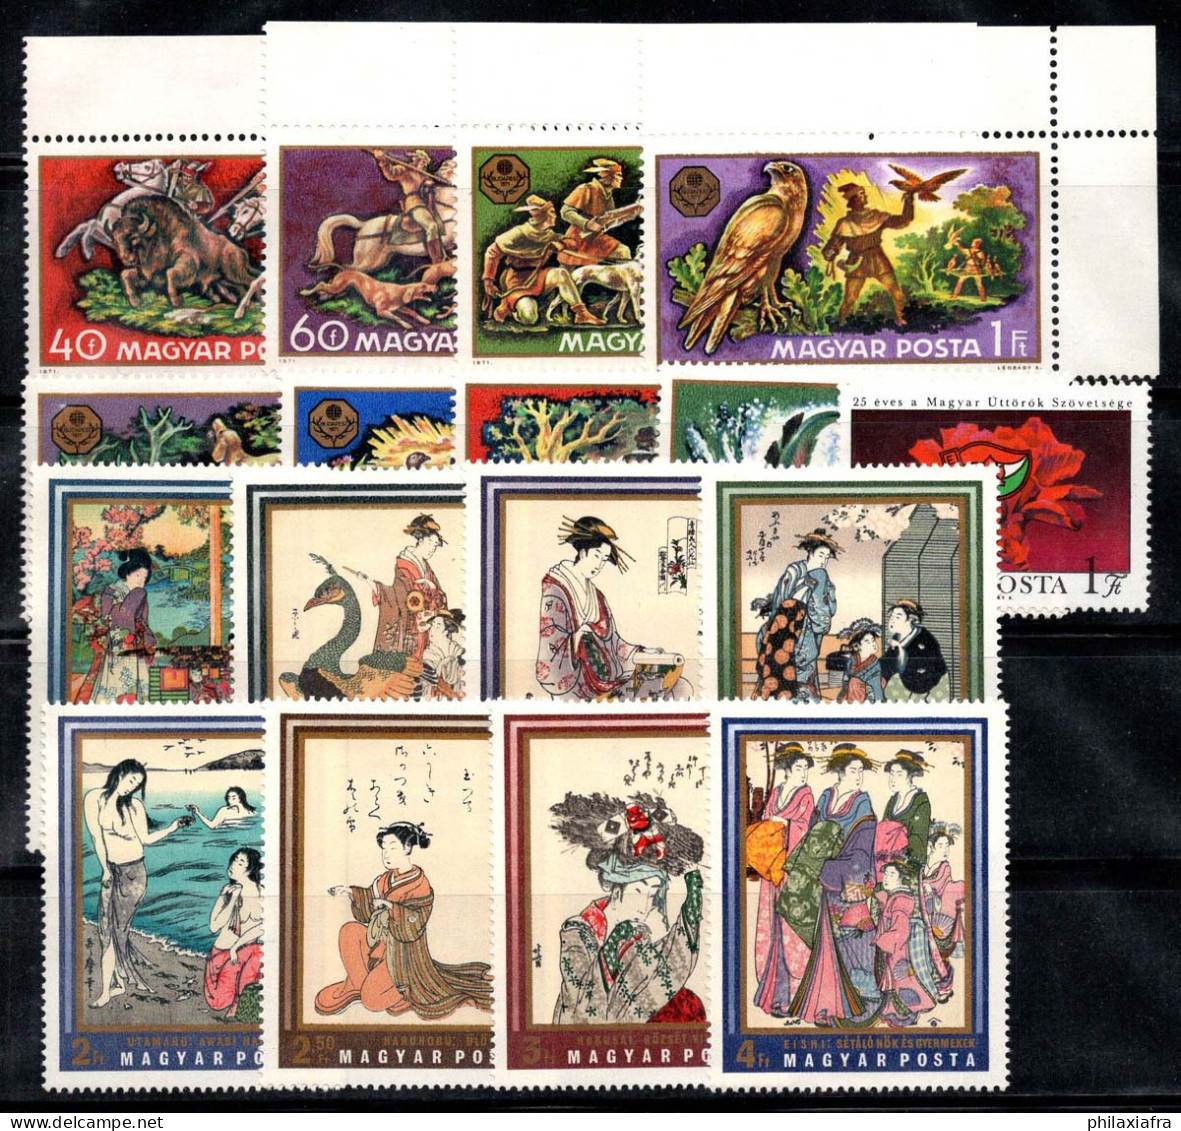 Hongrie 1971 Mi. 2664-80 A Neuf ** 100% La Chasse, Oeillet, Estampes Japonaises - Unused Stamps